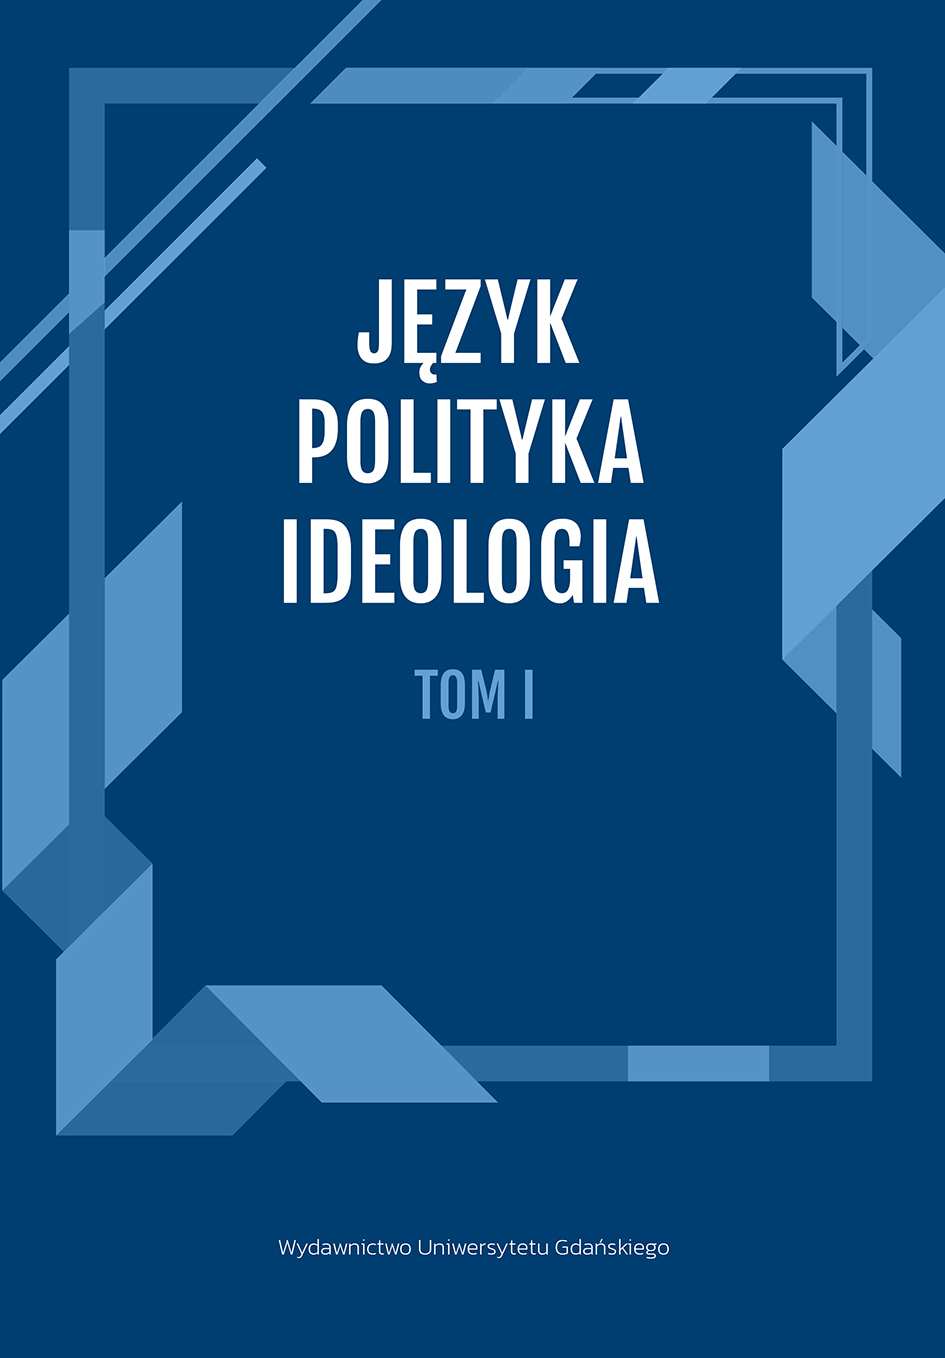 polityka – ideologia tom 1 gotowy (002)